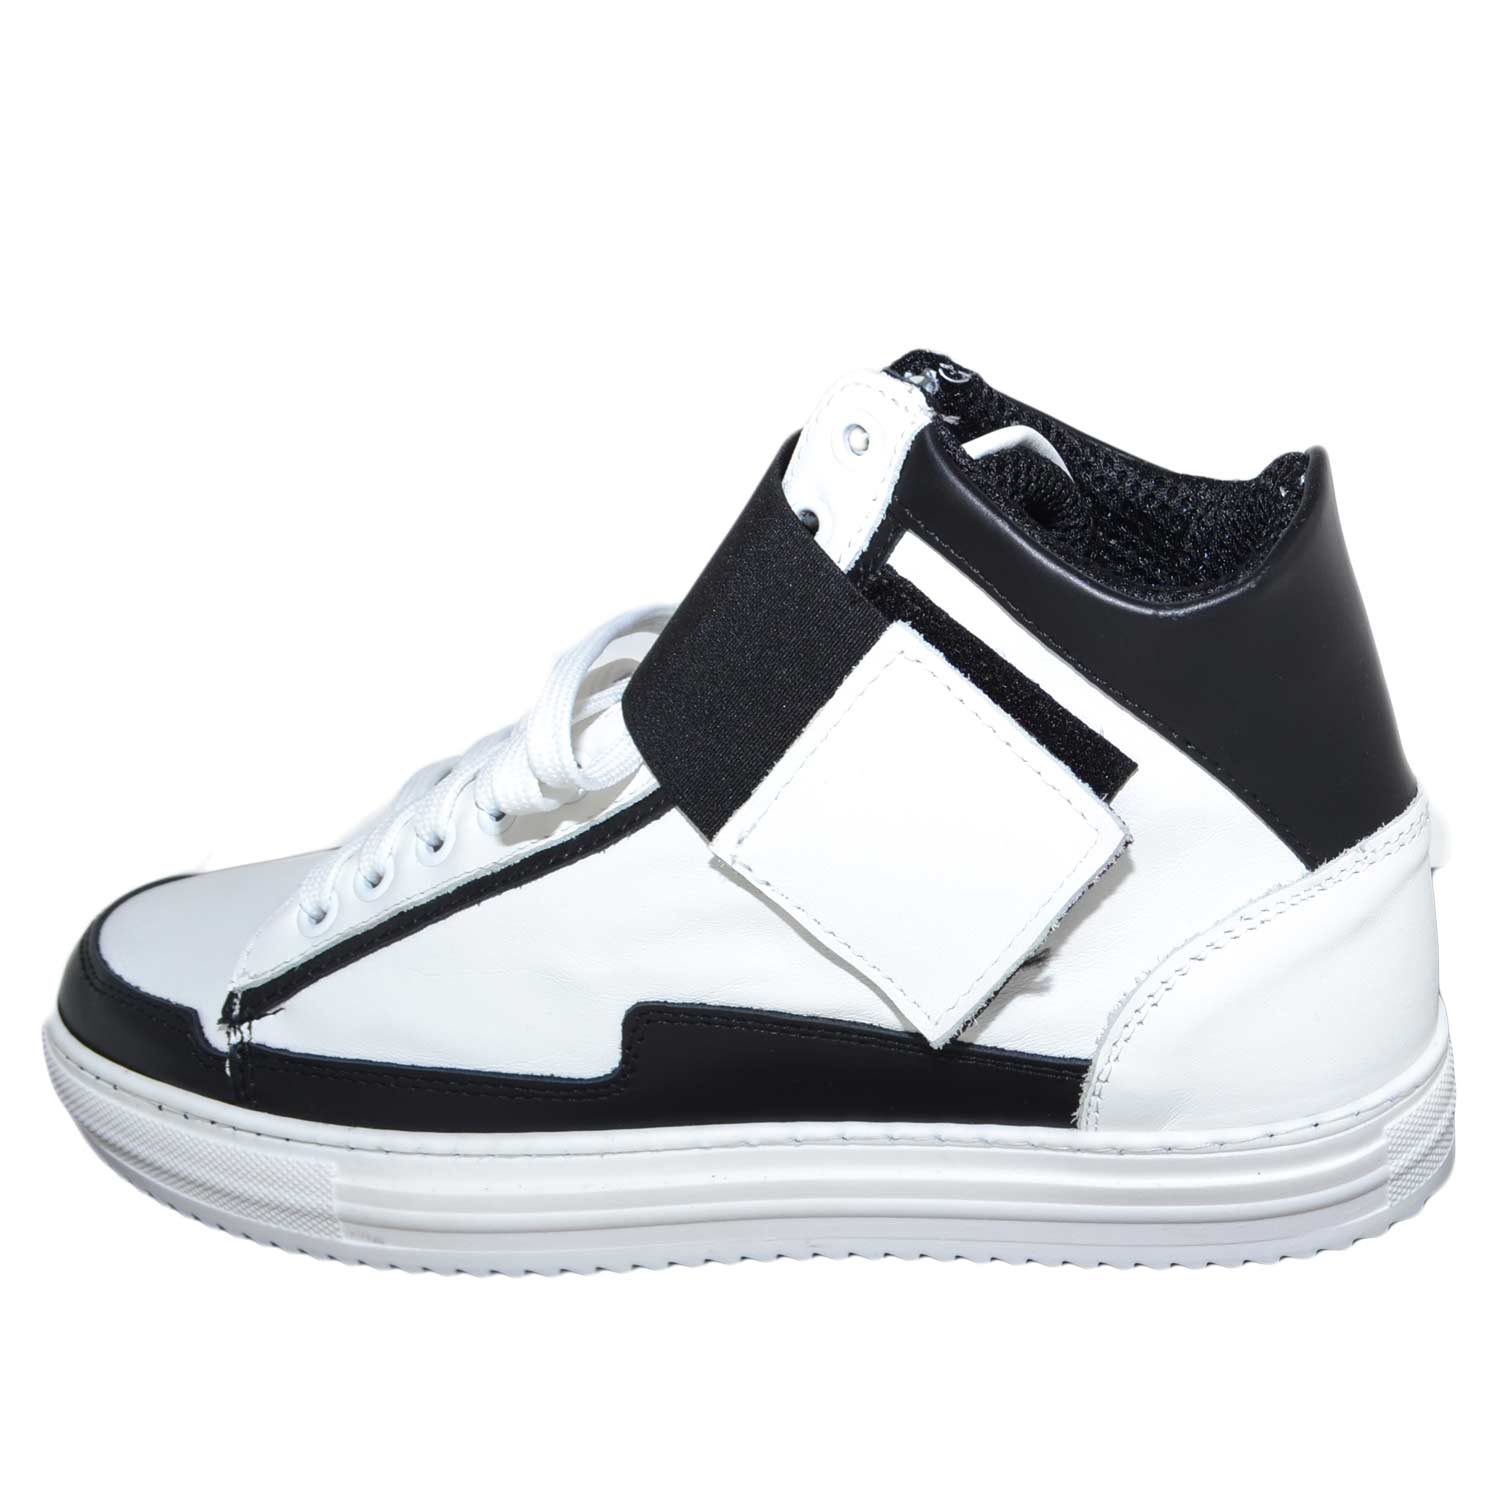 Sneakers alta art.8189 in vera pelle bianco/nero bicolore con strappo ed elastico nero made in italy fondo antiscivolo c.